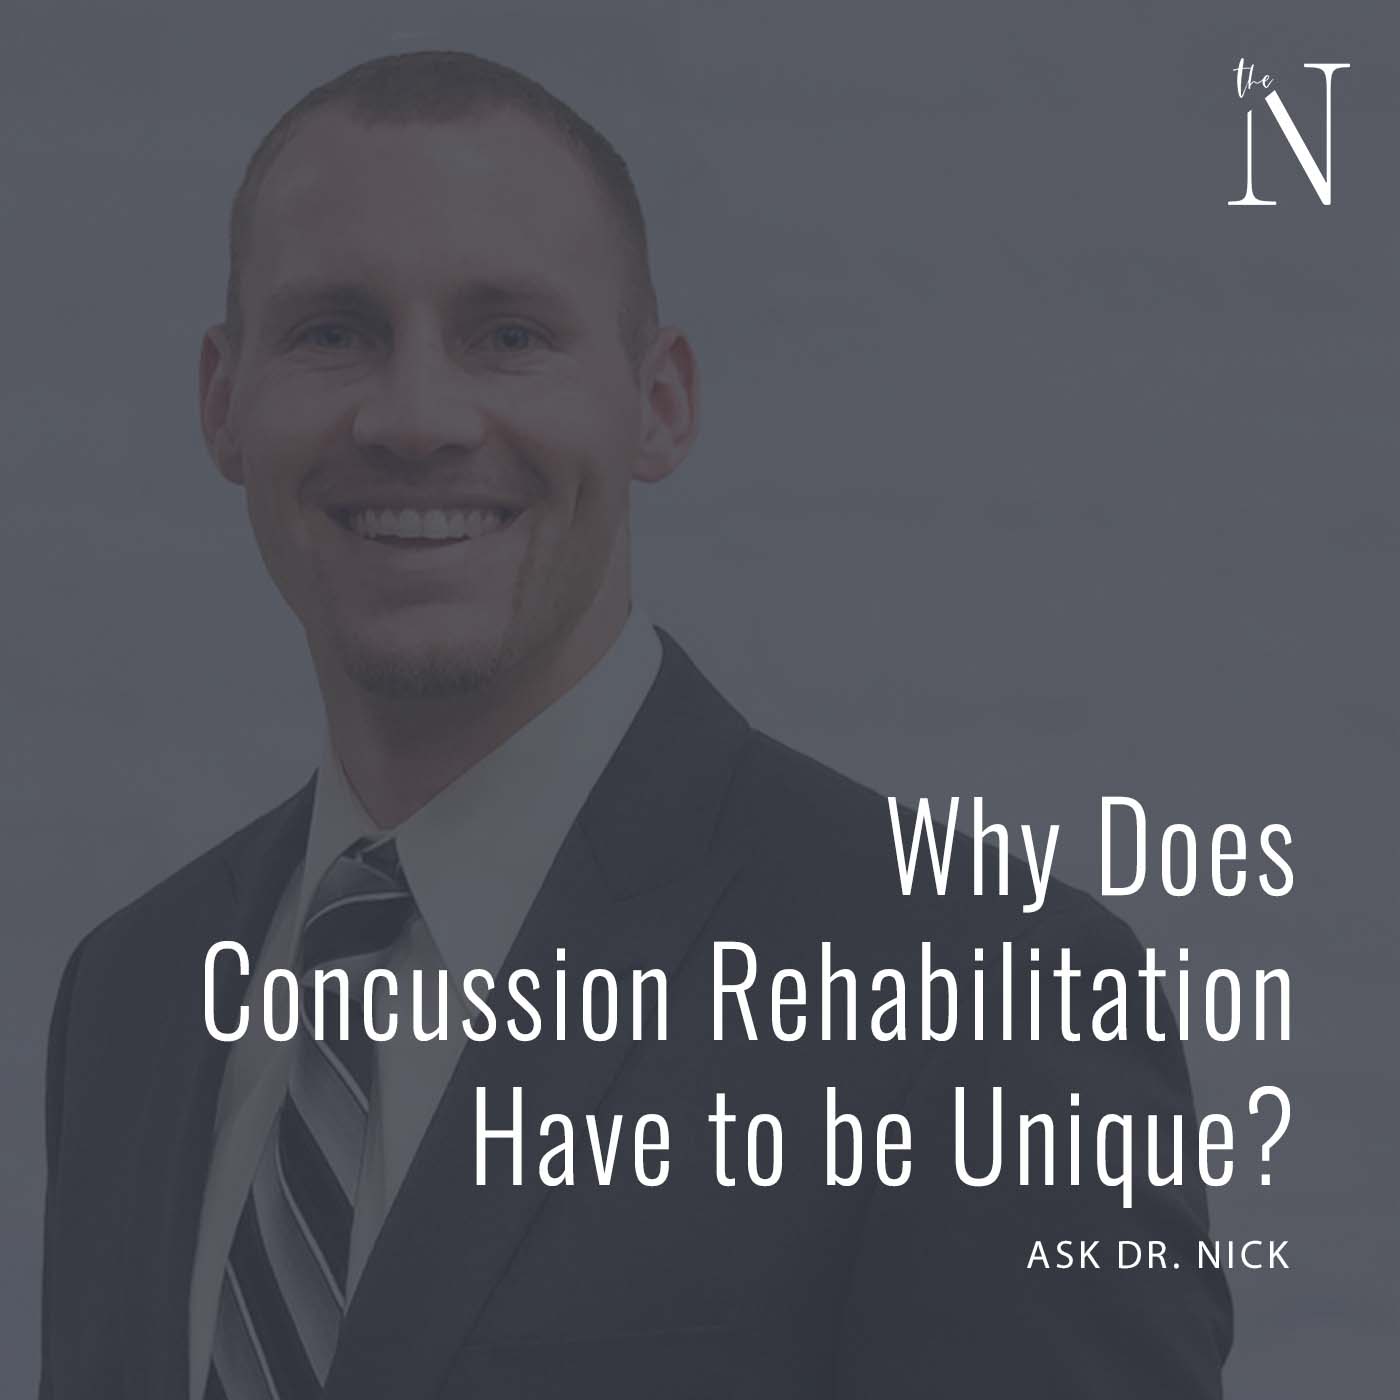 Concussion Rehabilitation